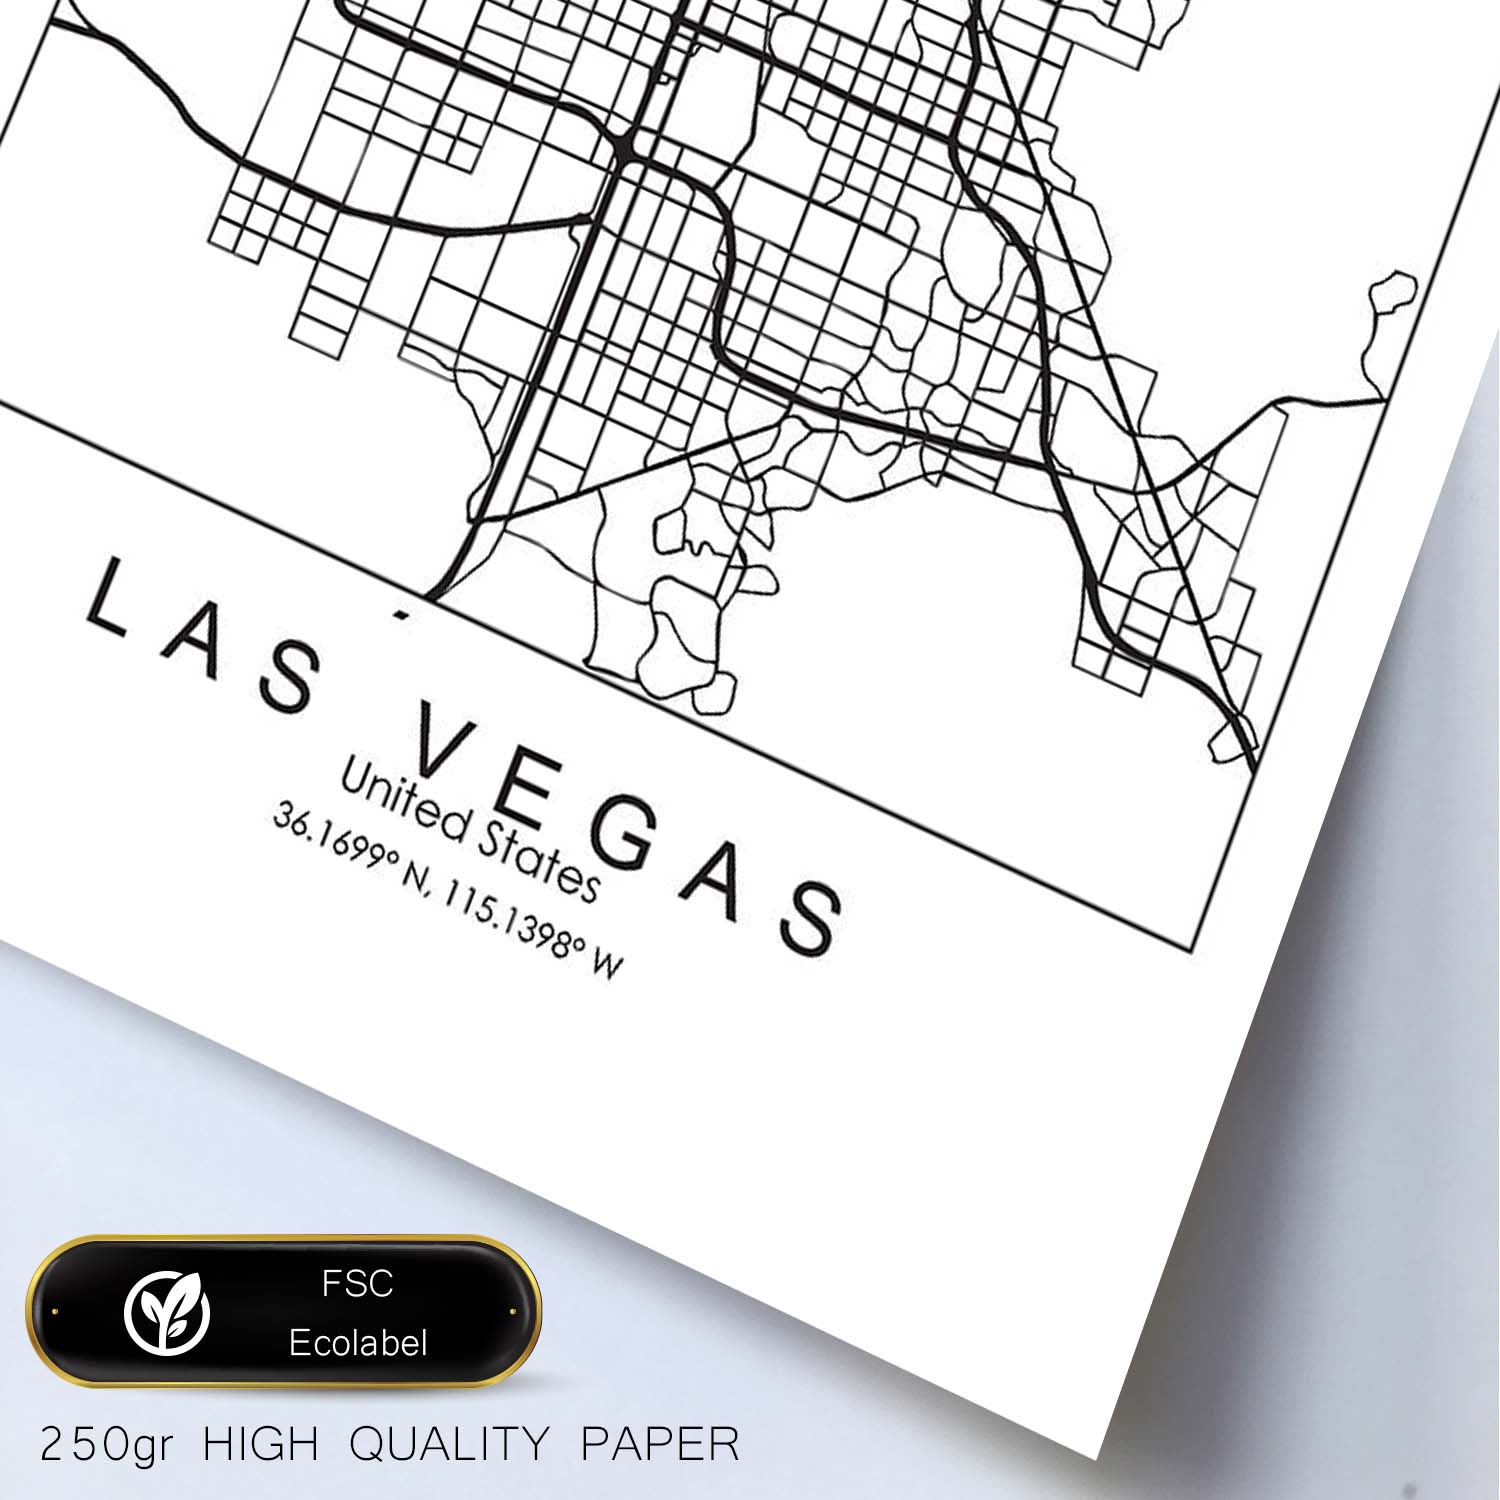 Poster con mapa de Las Vegas. Lámina de Estados Unidos, con imágenes de mapas y carreteras-Artwork-Nacnic-Nacnic Estudio SL